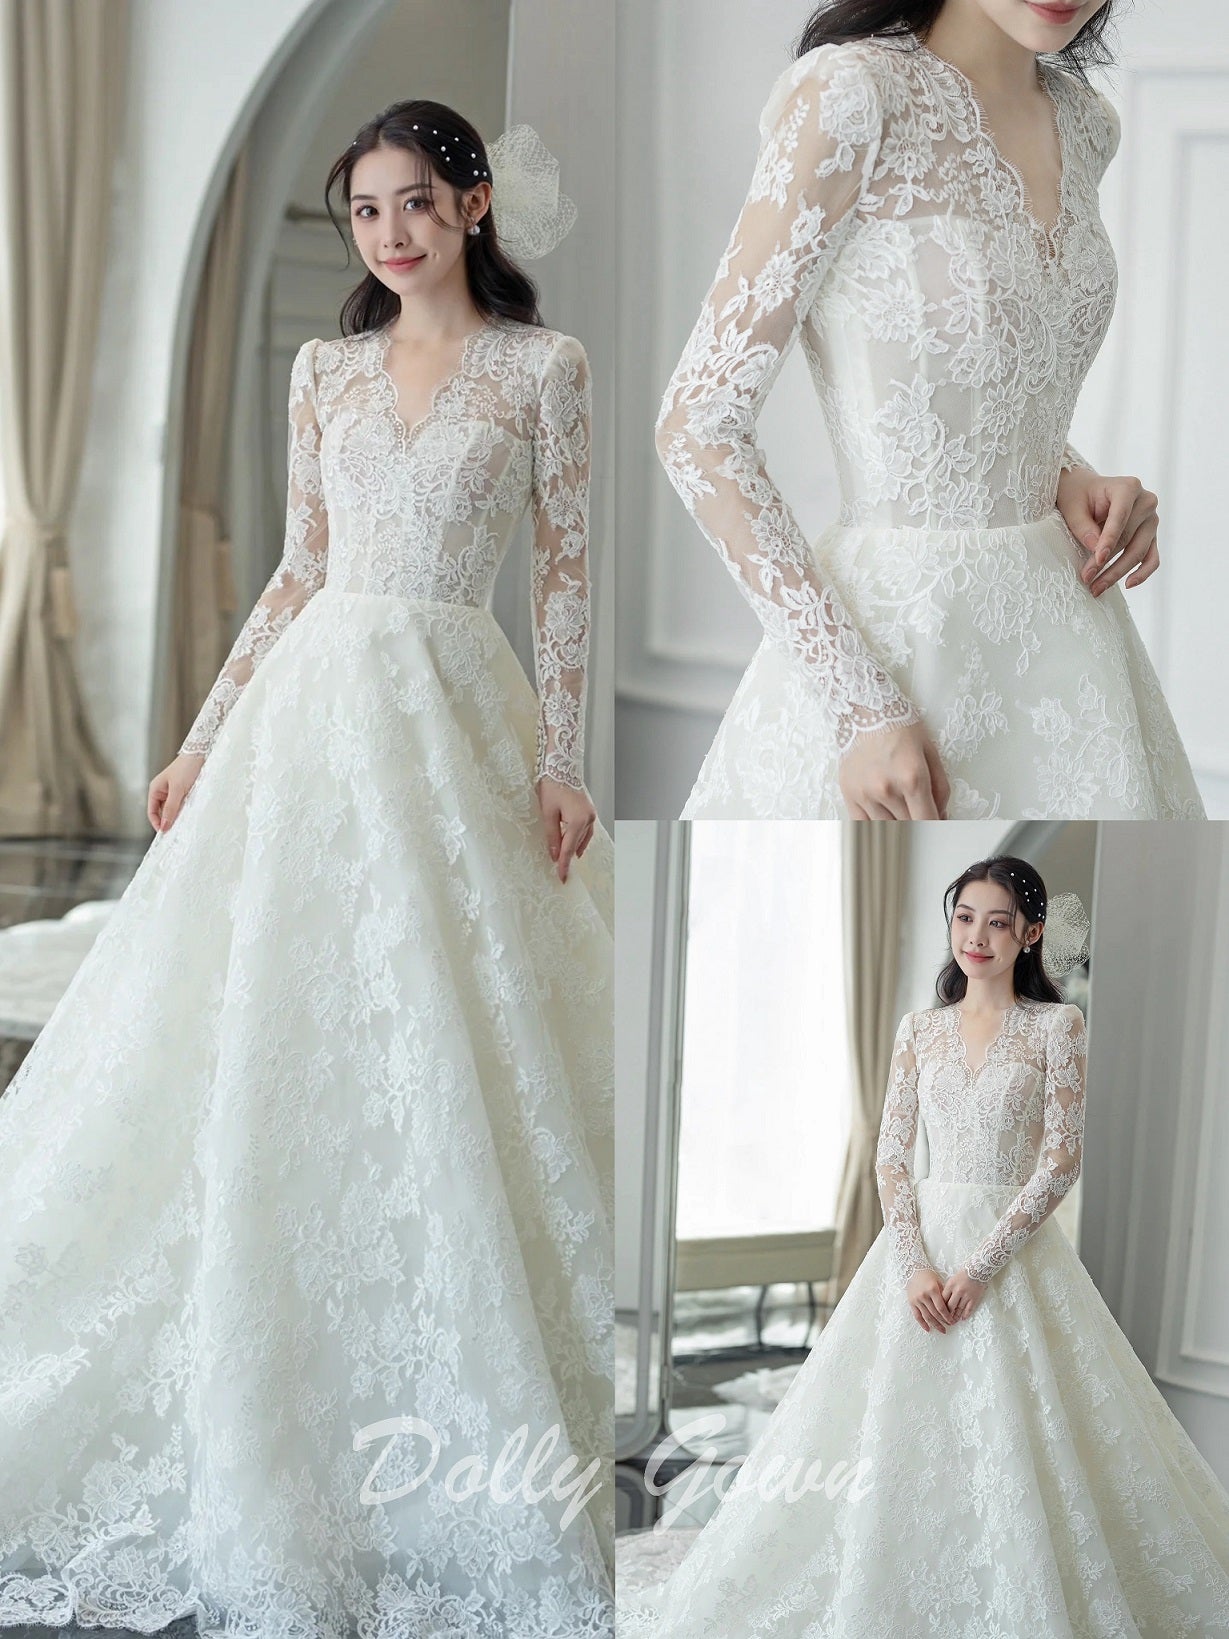 Dresses With Long Sleeves Wedding Dresses - Wendy's Bridal Cincinnati